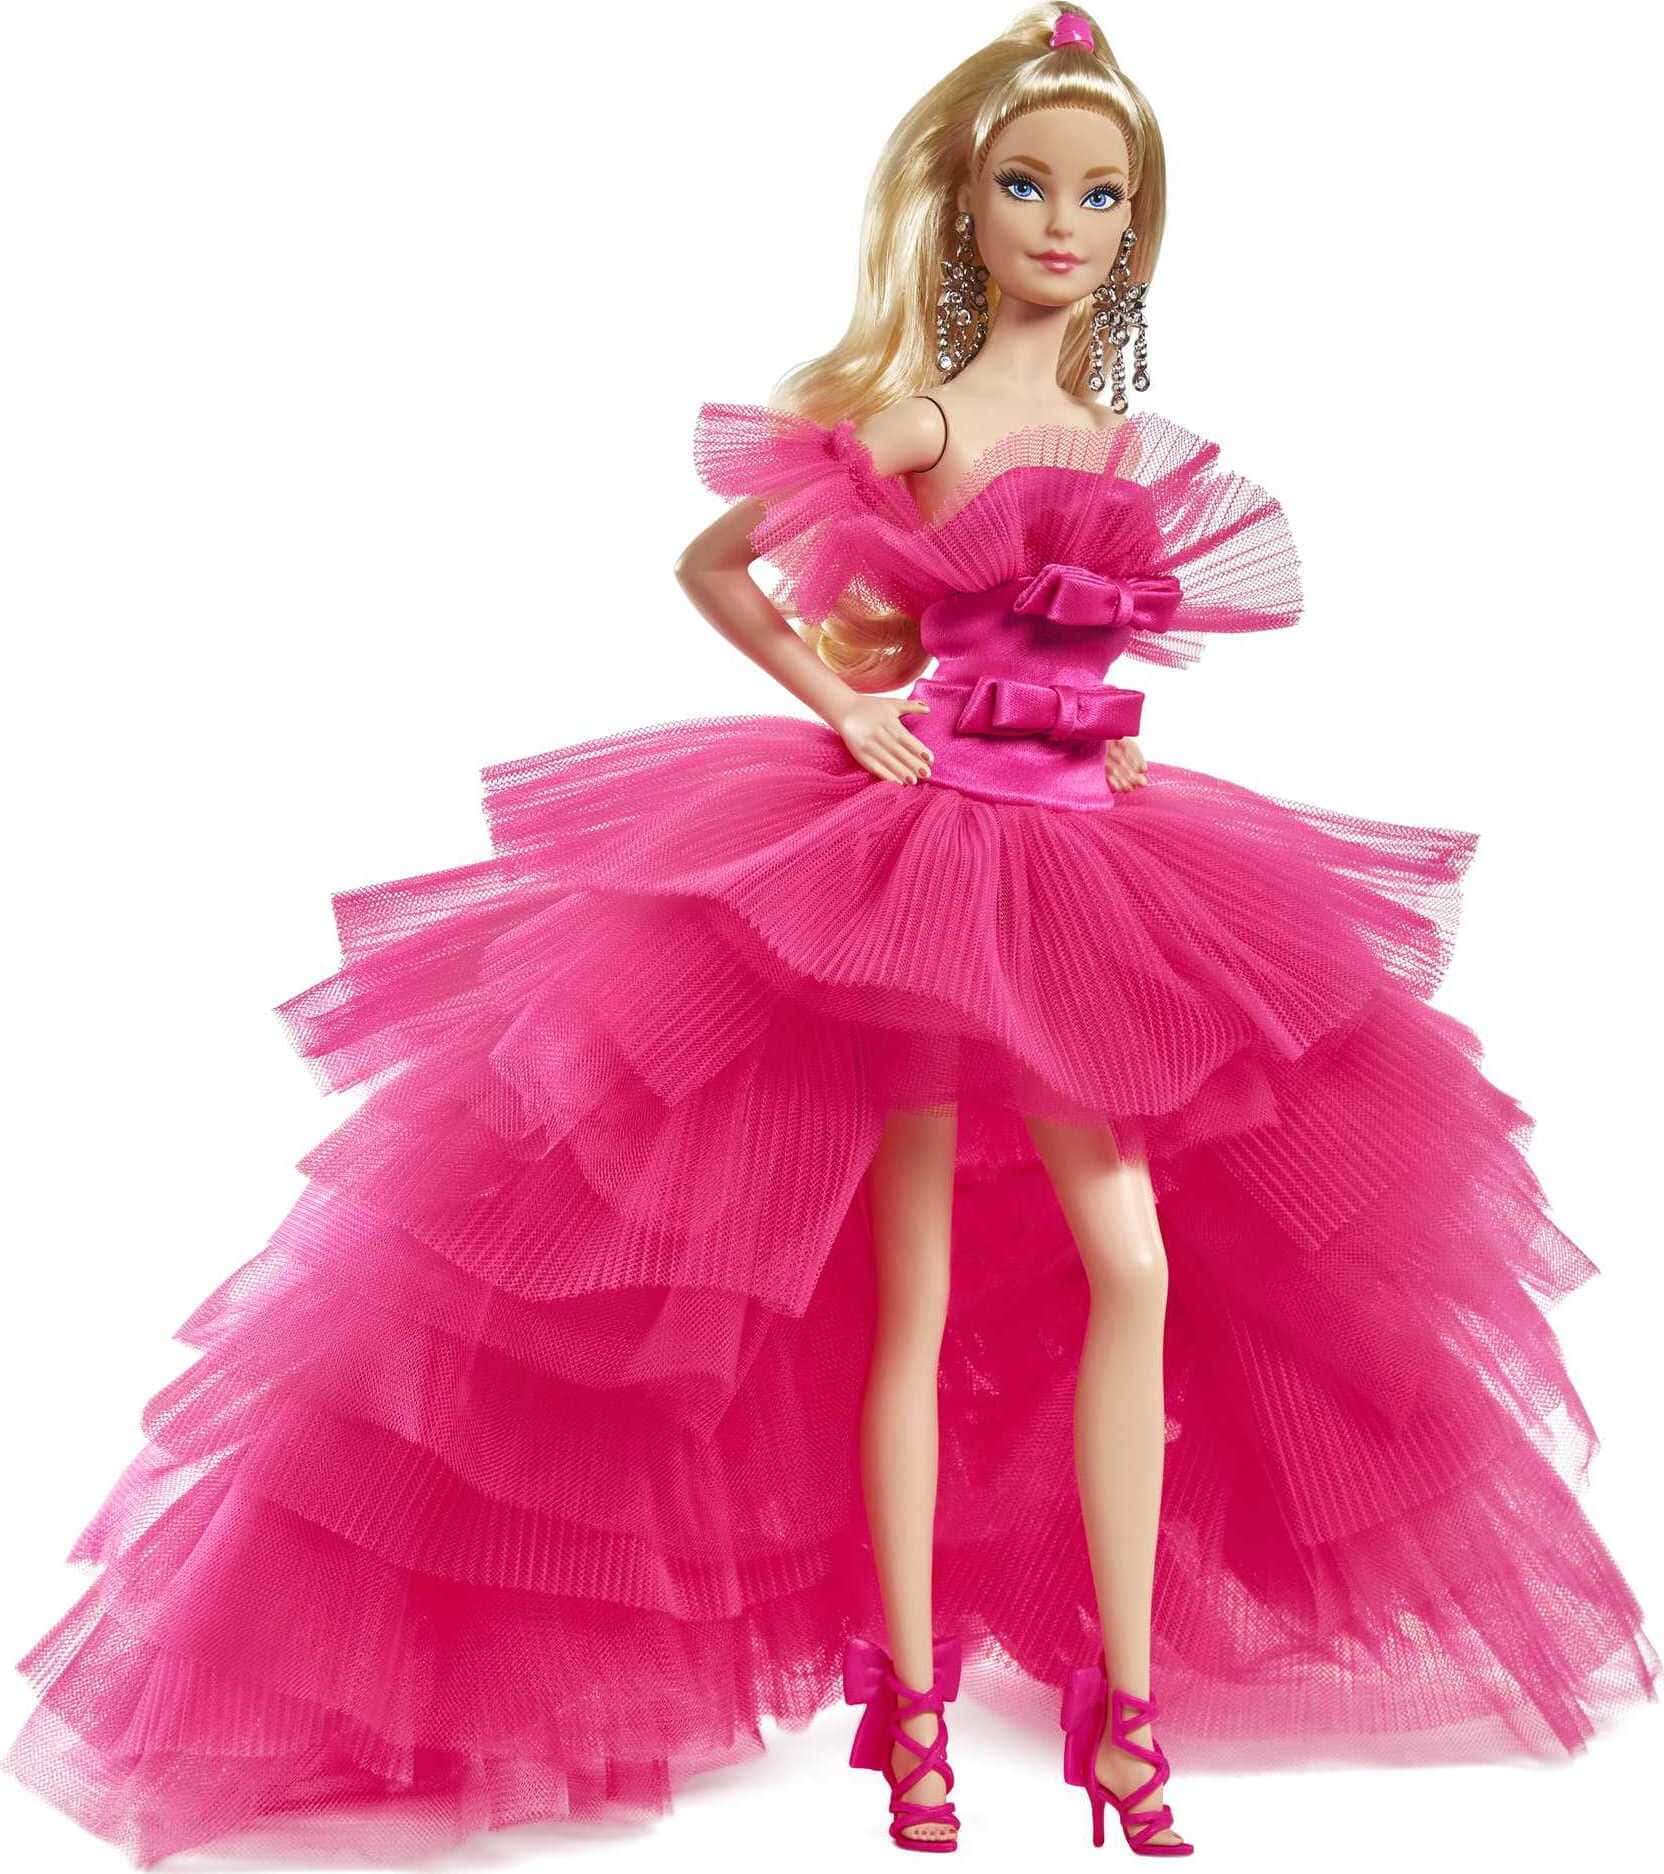 Einkindheitstraum Wird Wahr - Eine Klassische Barbie-puppe.